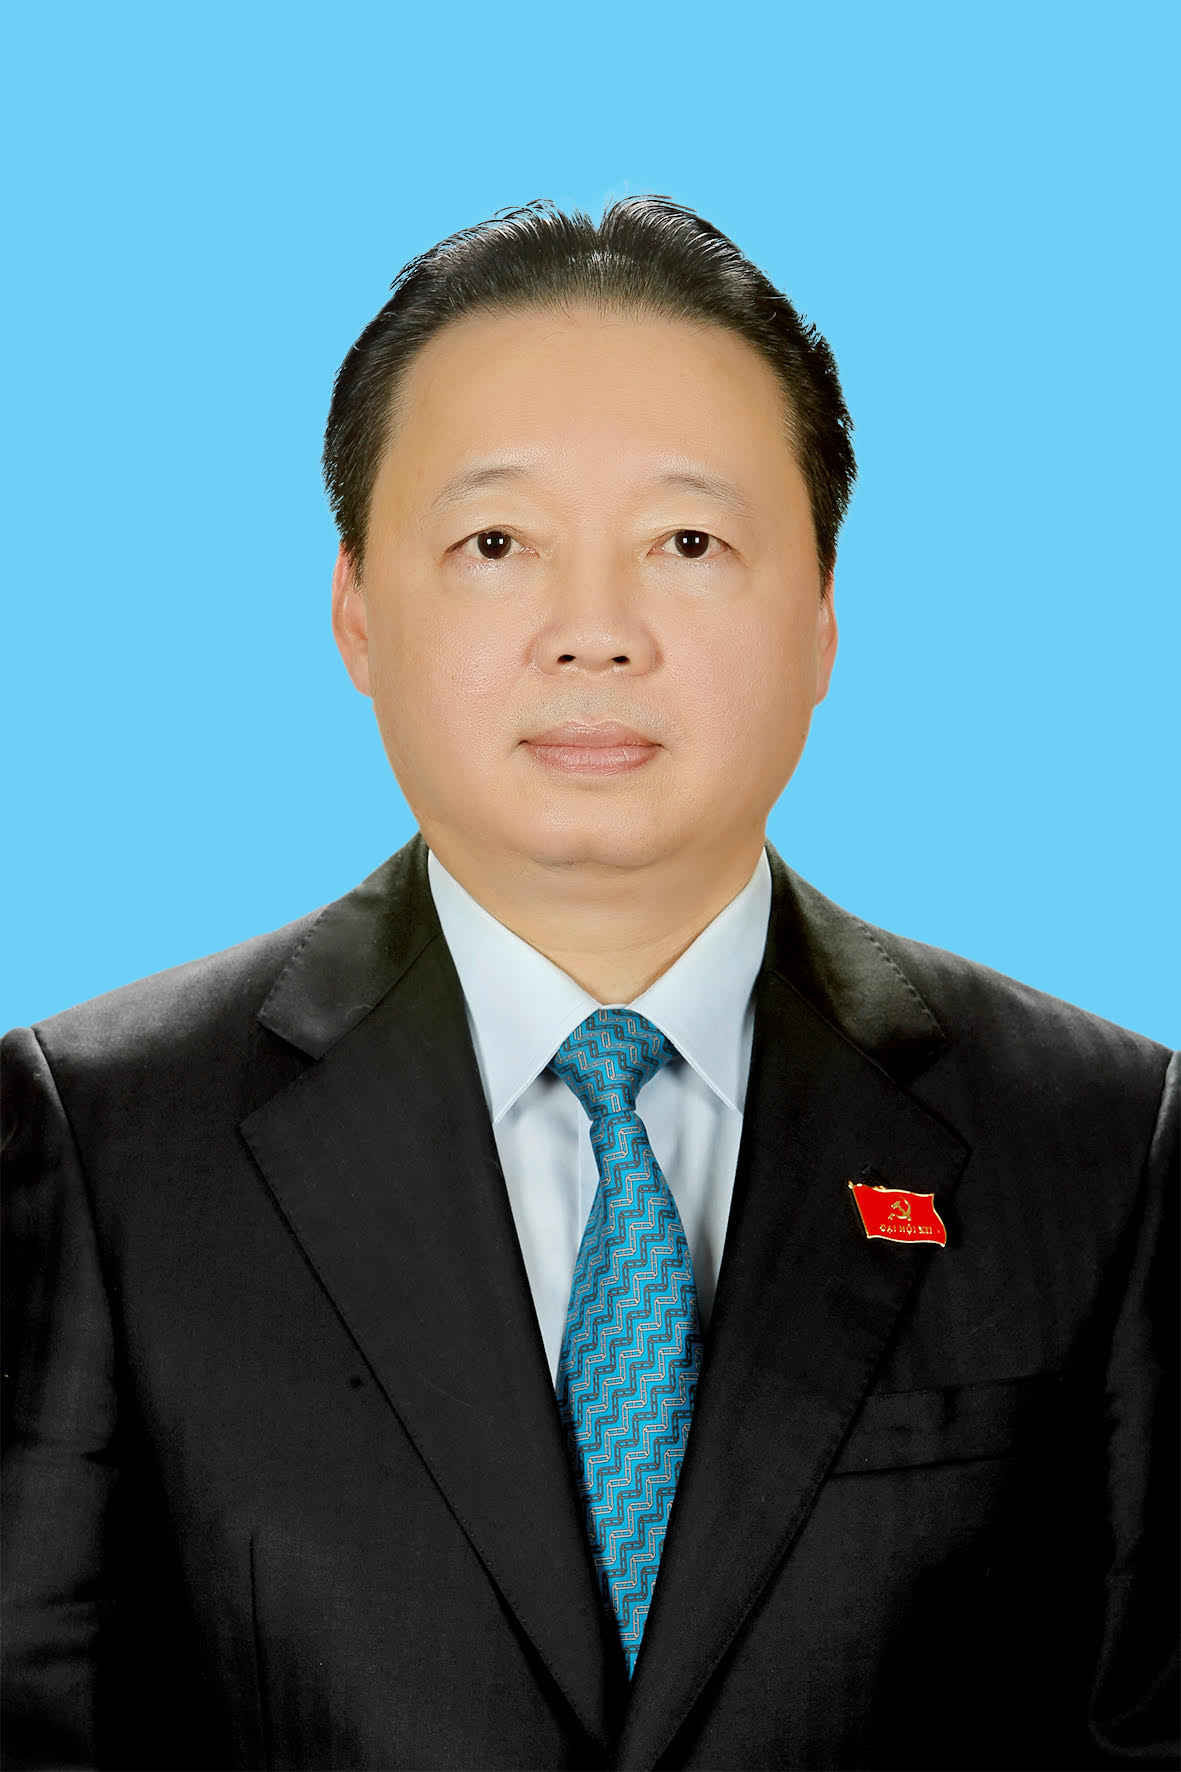 (TN&MT) - Sáng nay 09/4, Quốc hội khóa XIII đã chính thức bầu và phê chuẩn đồng chí Trần Hồng Hà giữ chức vụ  Bộ trưởng Bộ Tài nguyên và Môi trường 